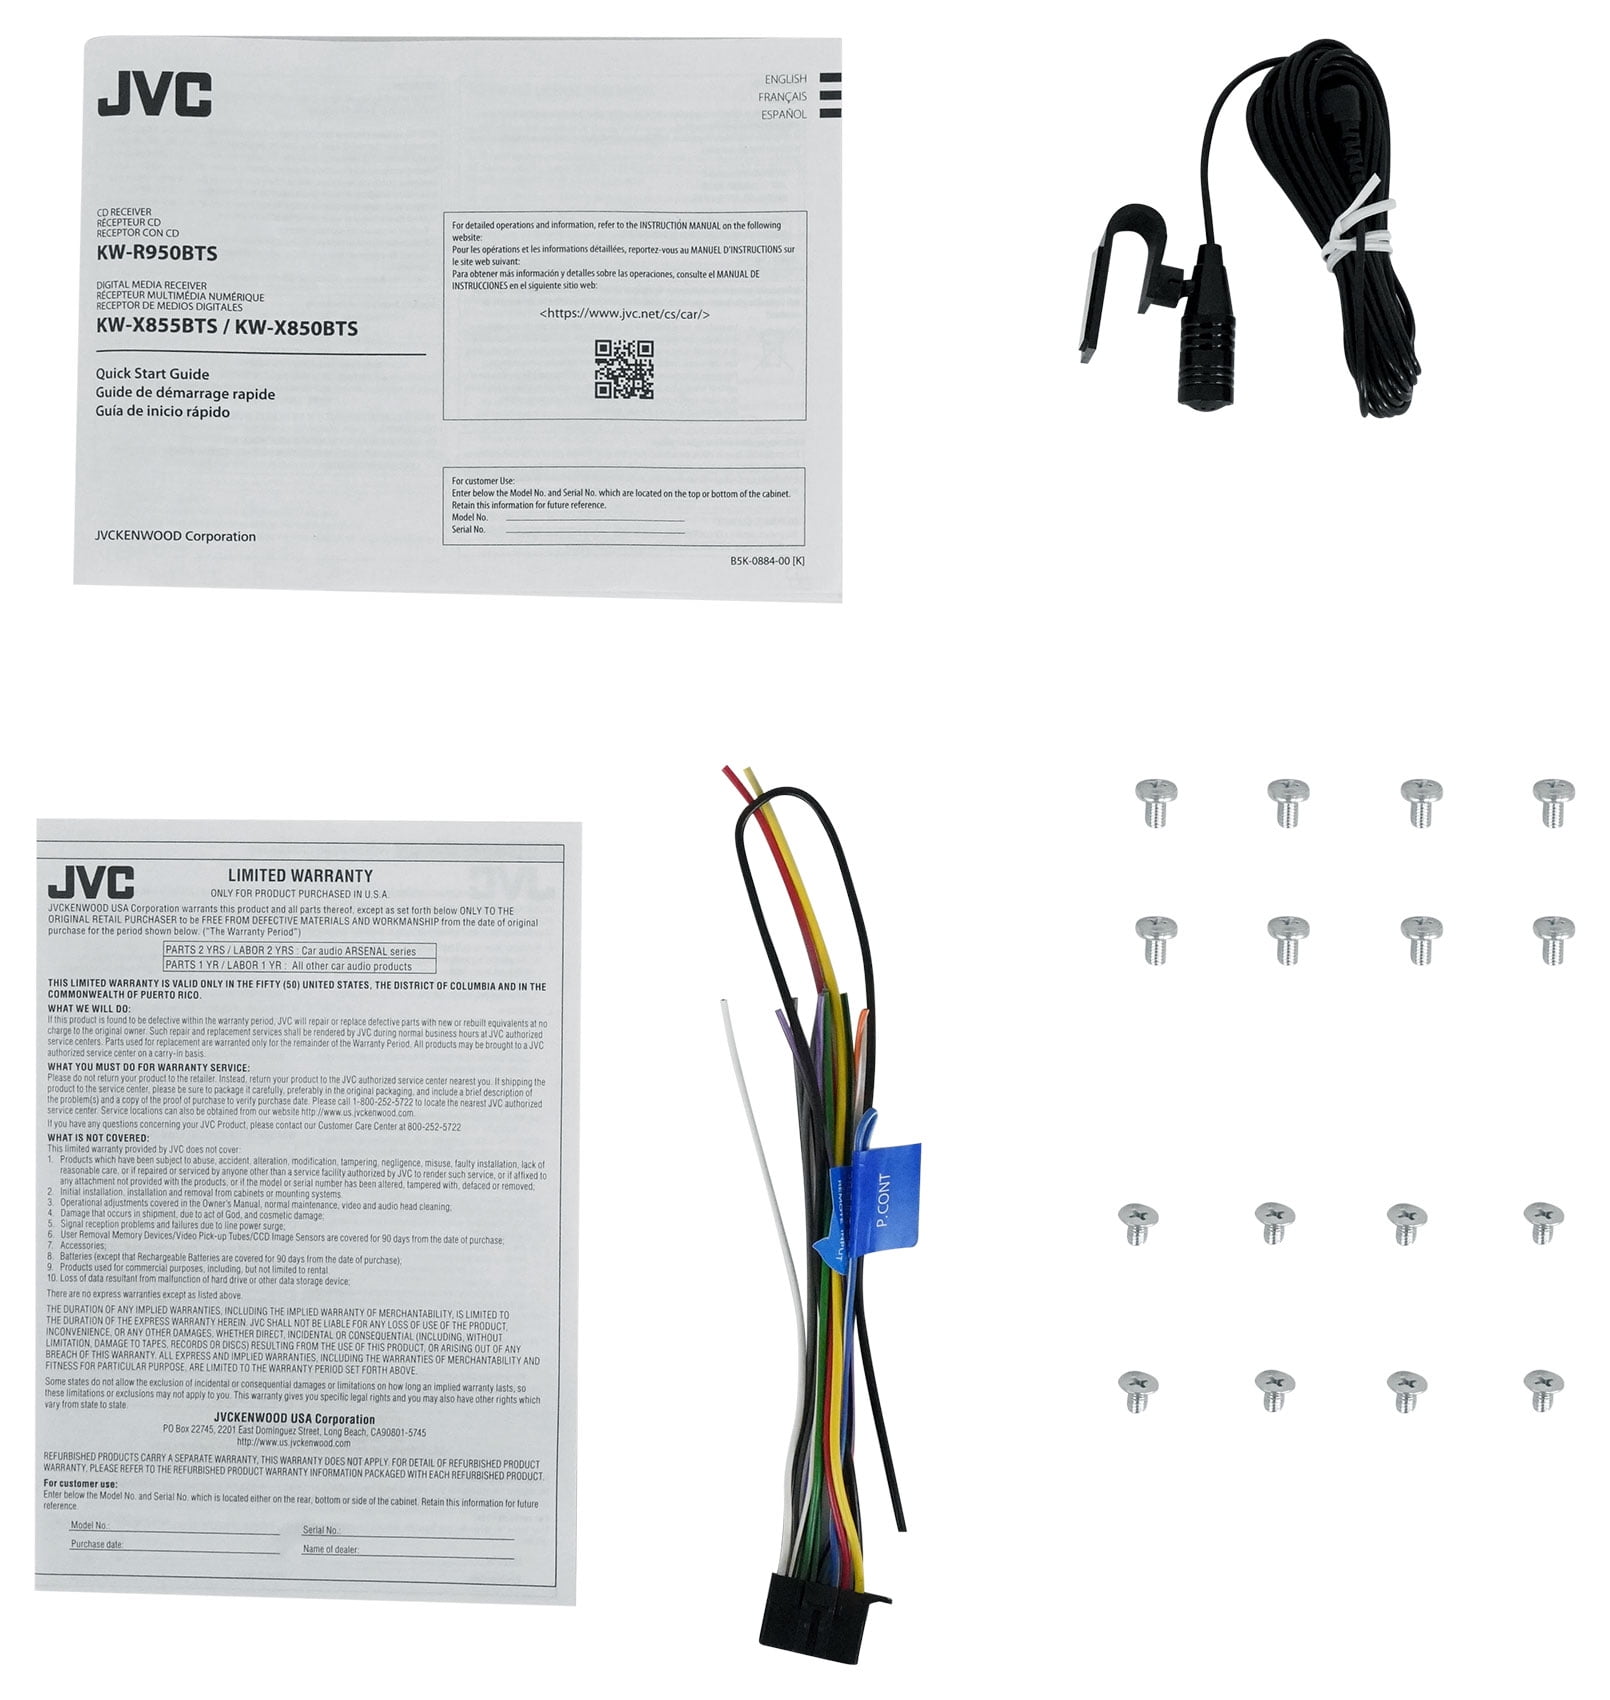 JVC KW-DB95BT Autoradio mit CD-Receiver, DAB+ und Bluetooth